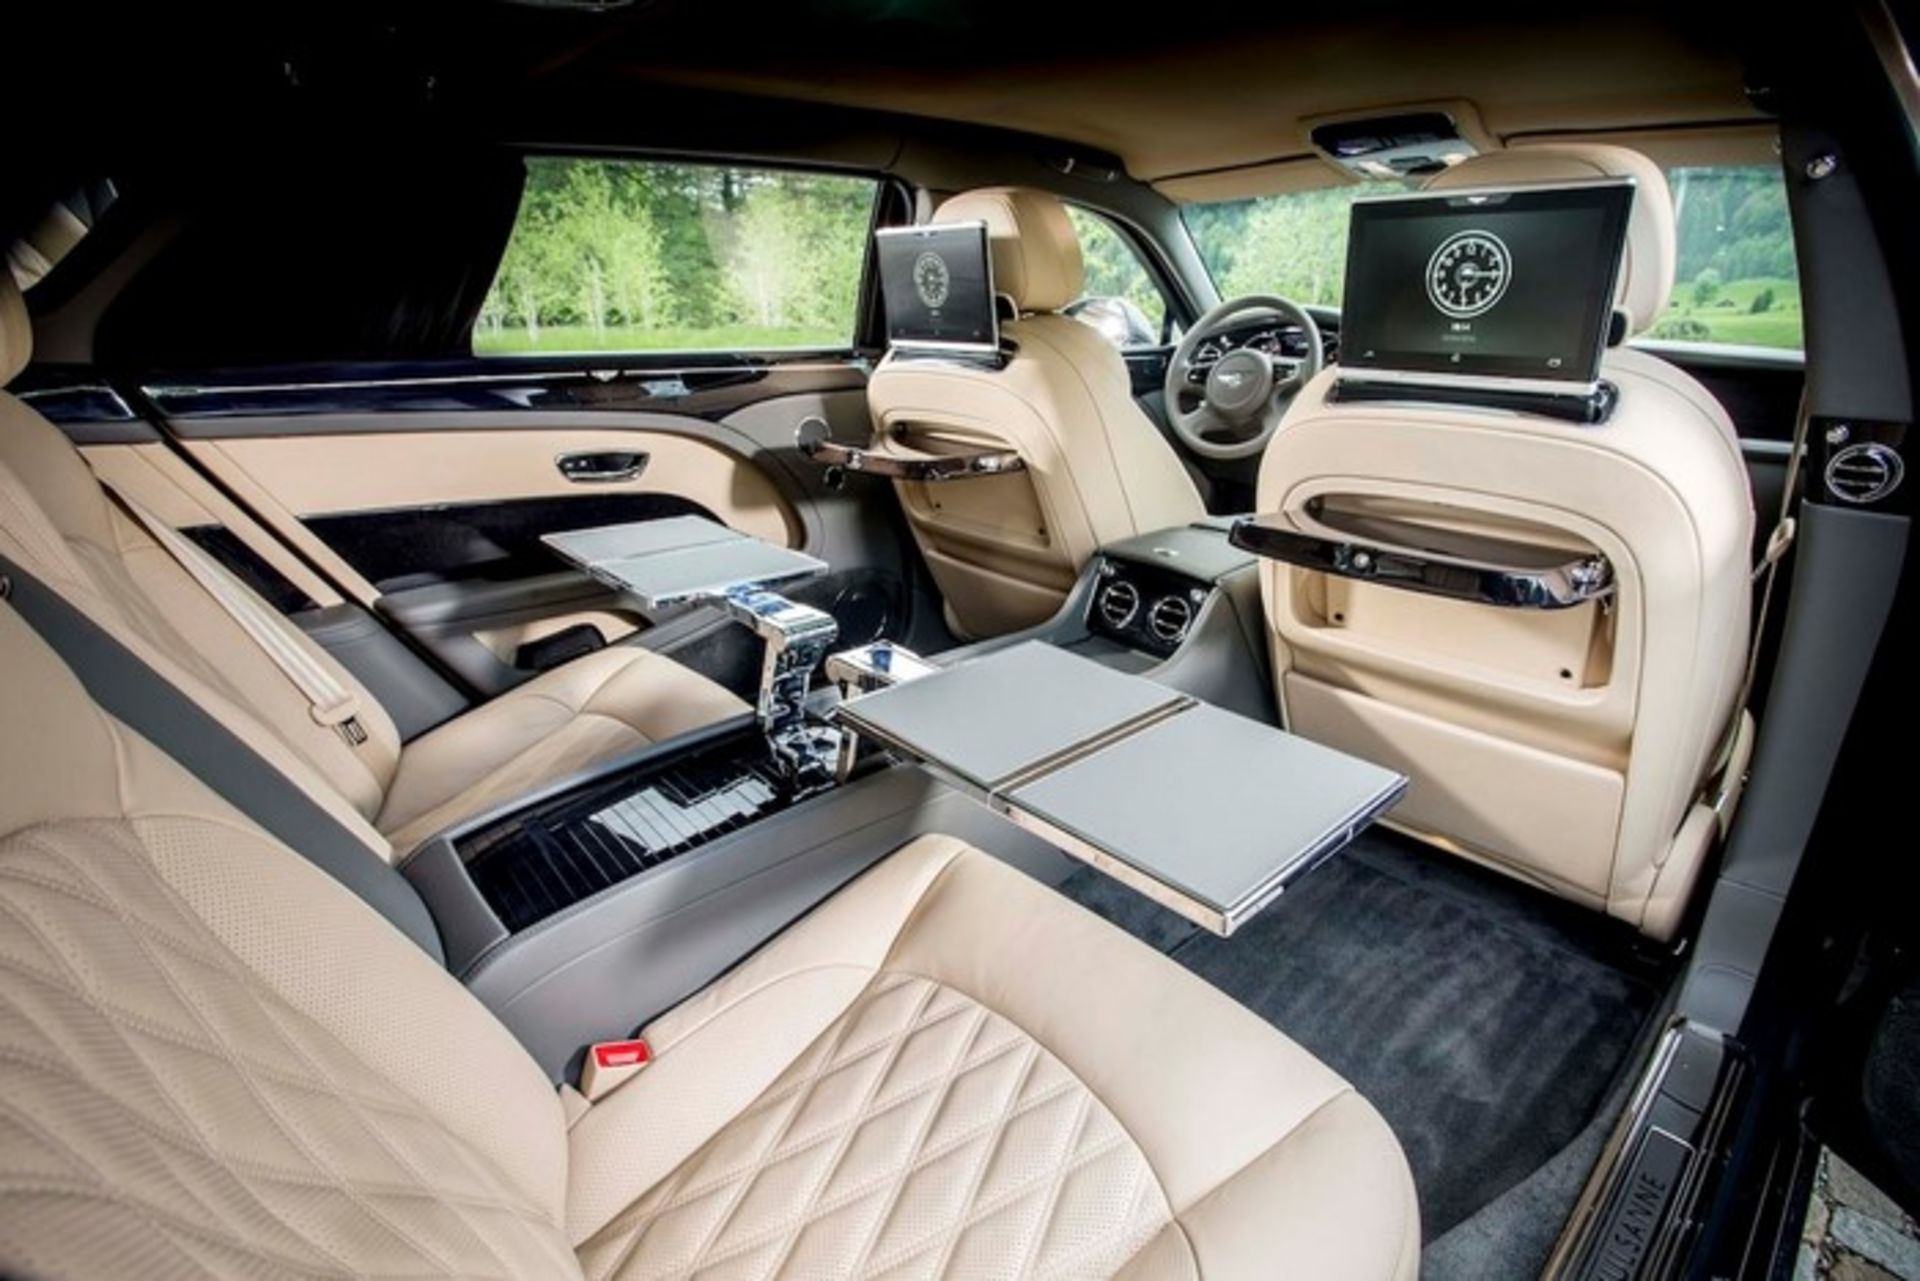 مرجع متخصصين ايران 2017 Bentley Mulsanne EWB interior view